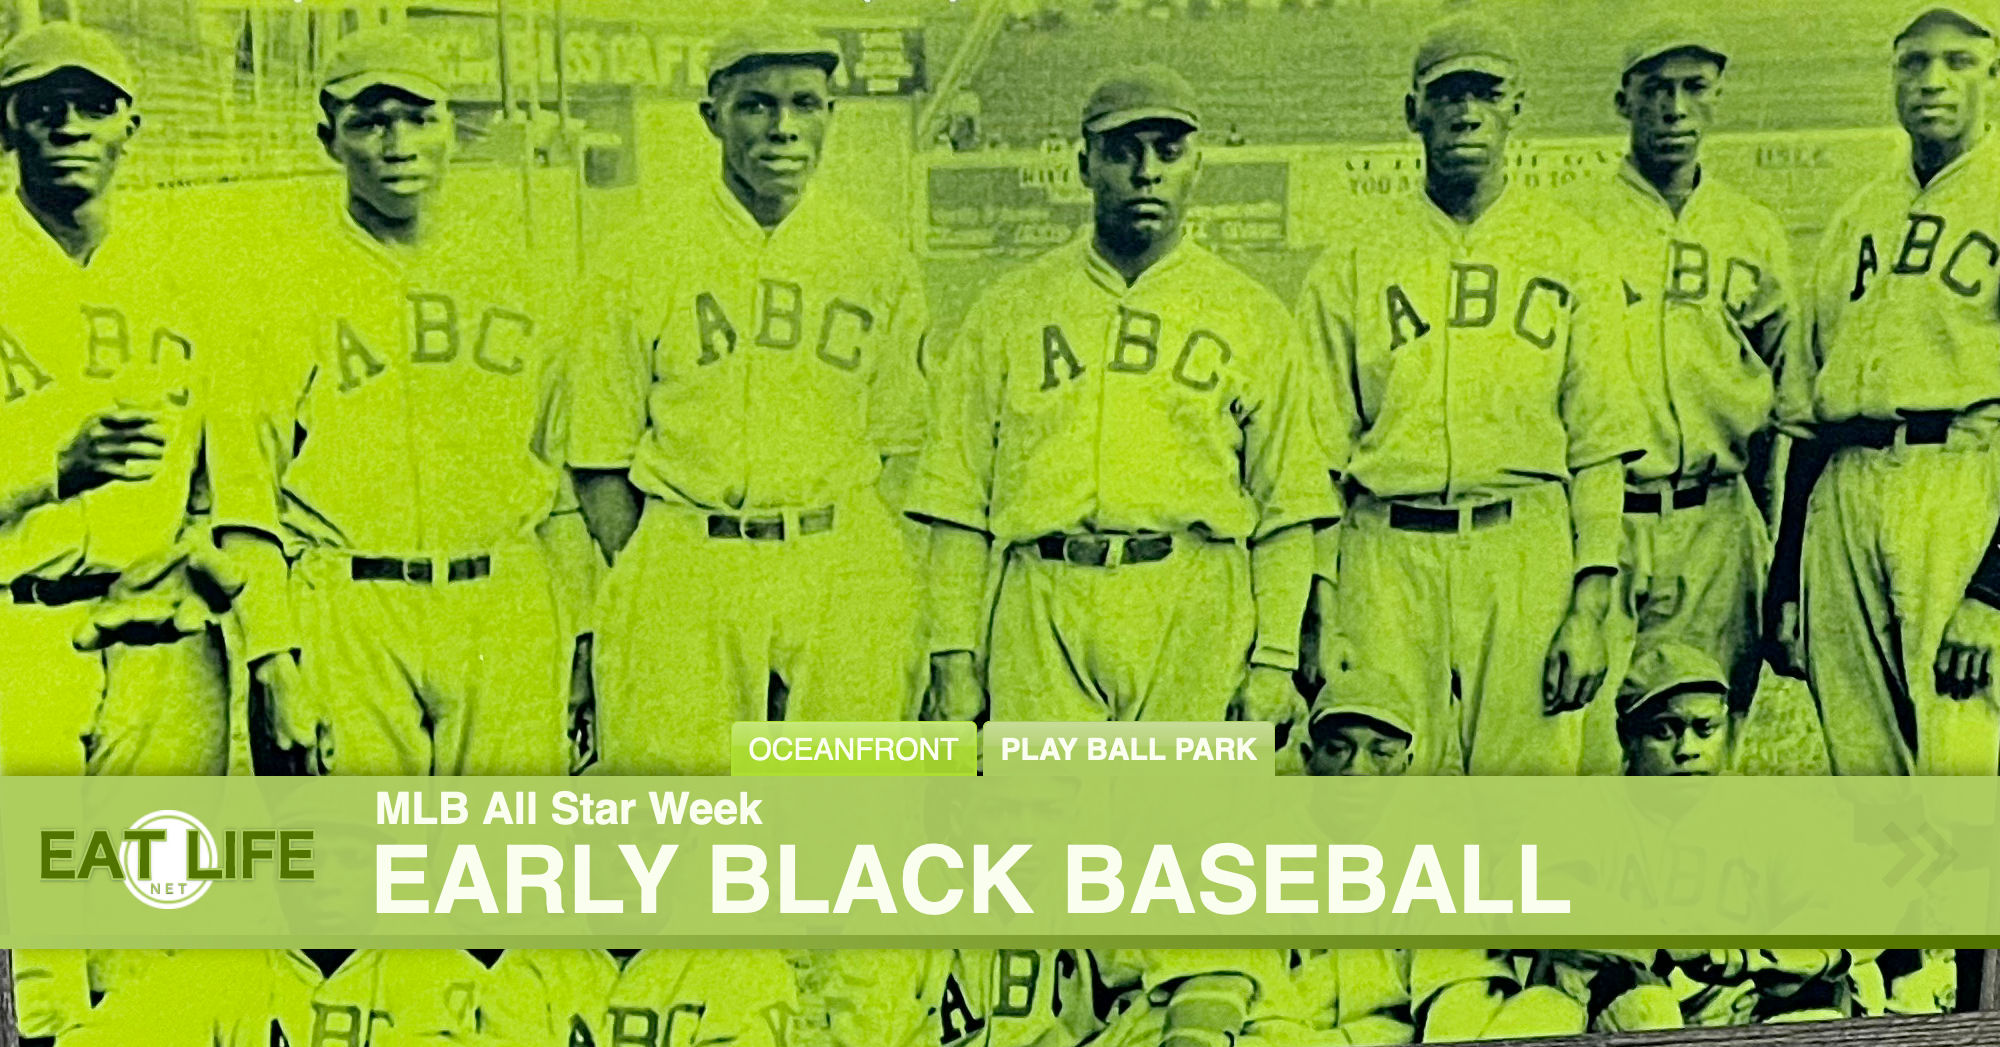 Early Black Baseball